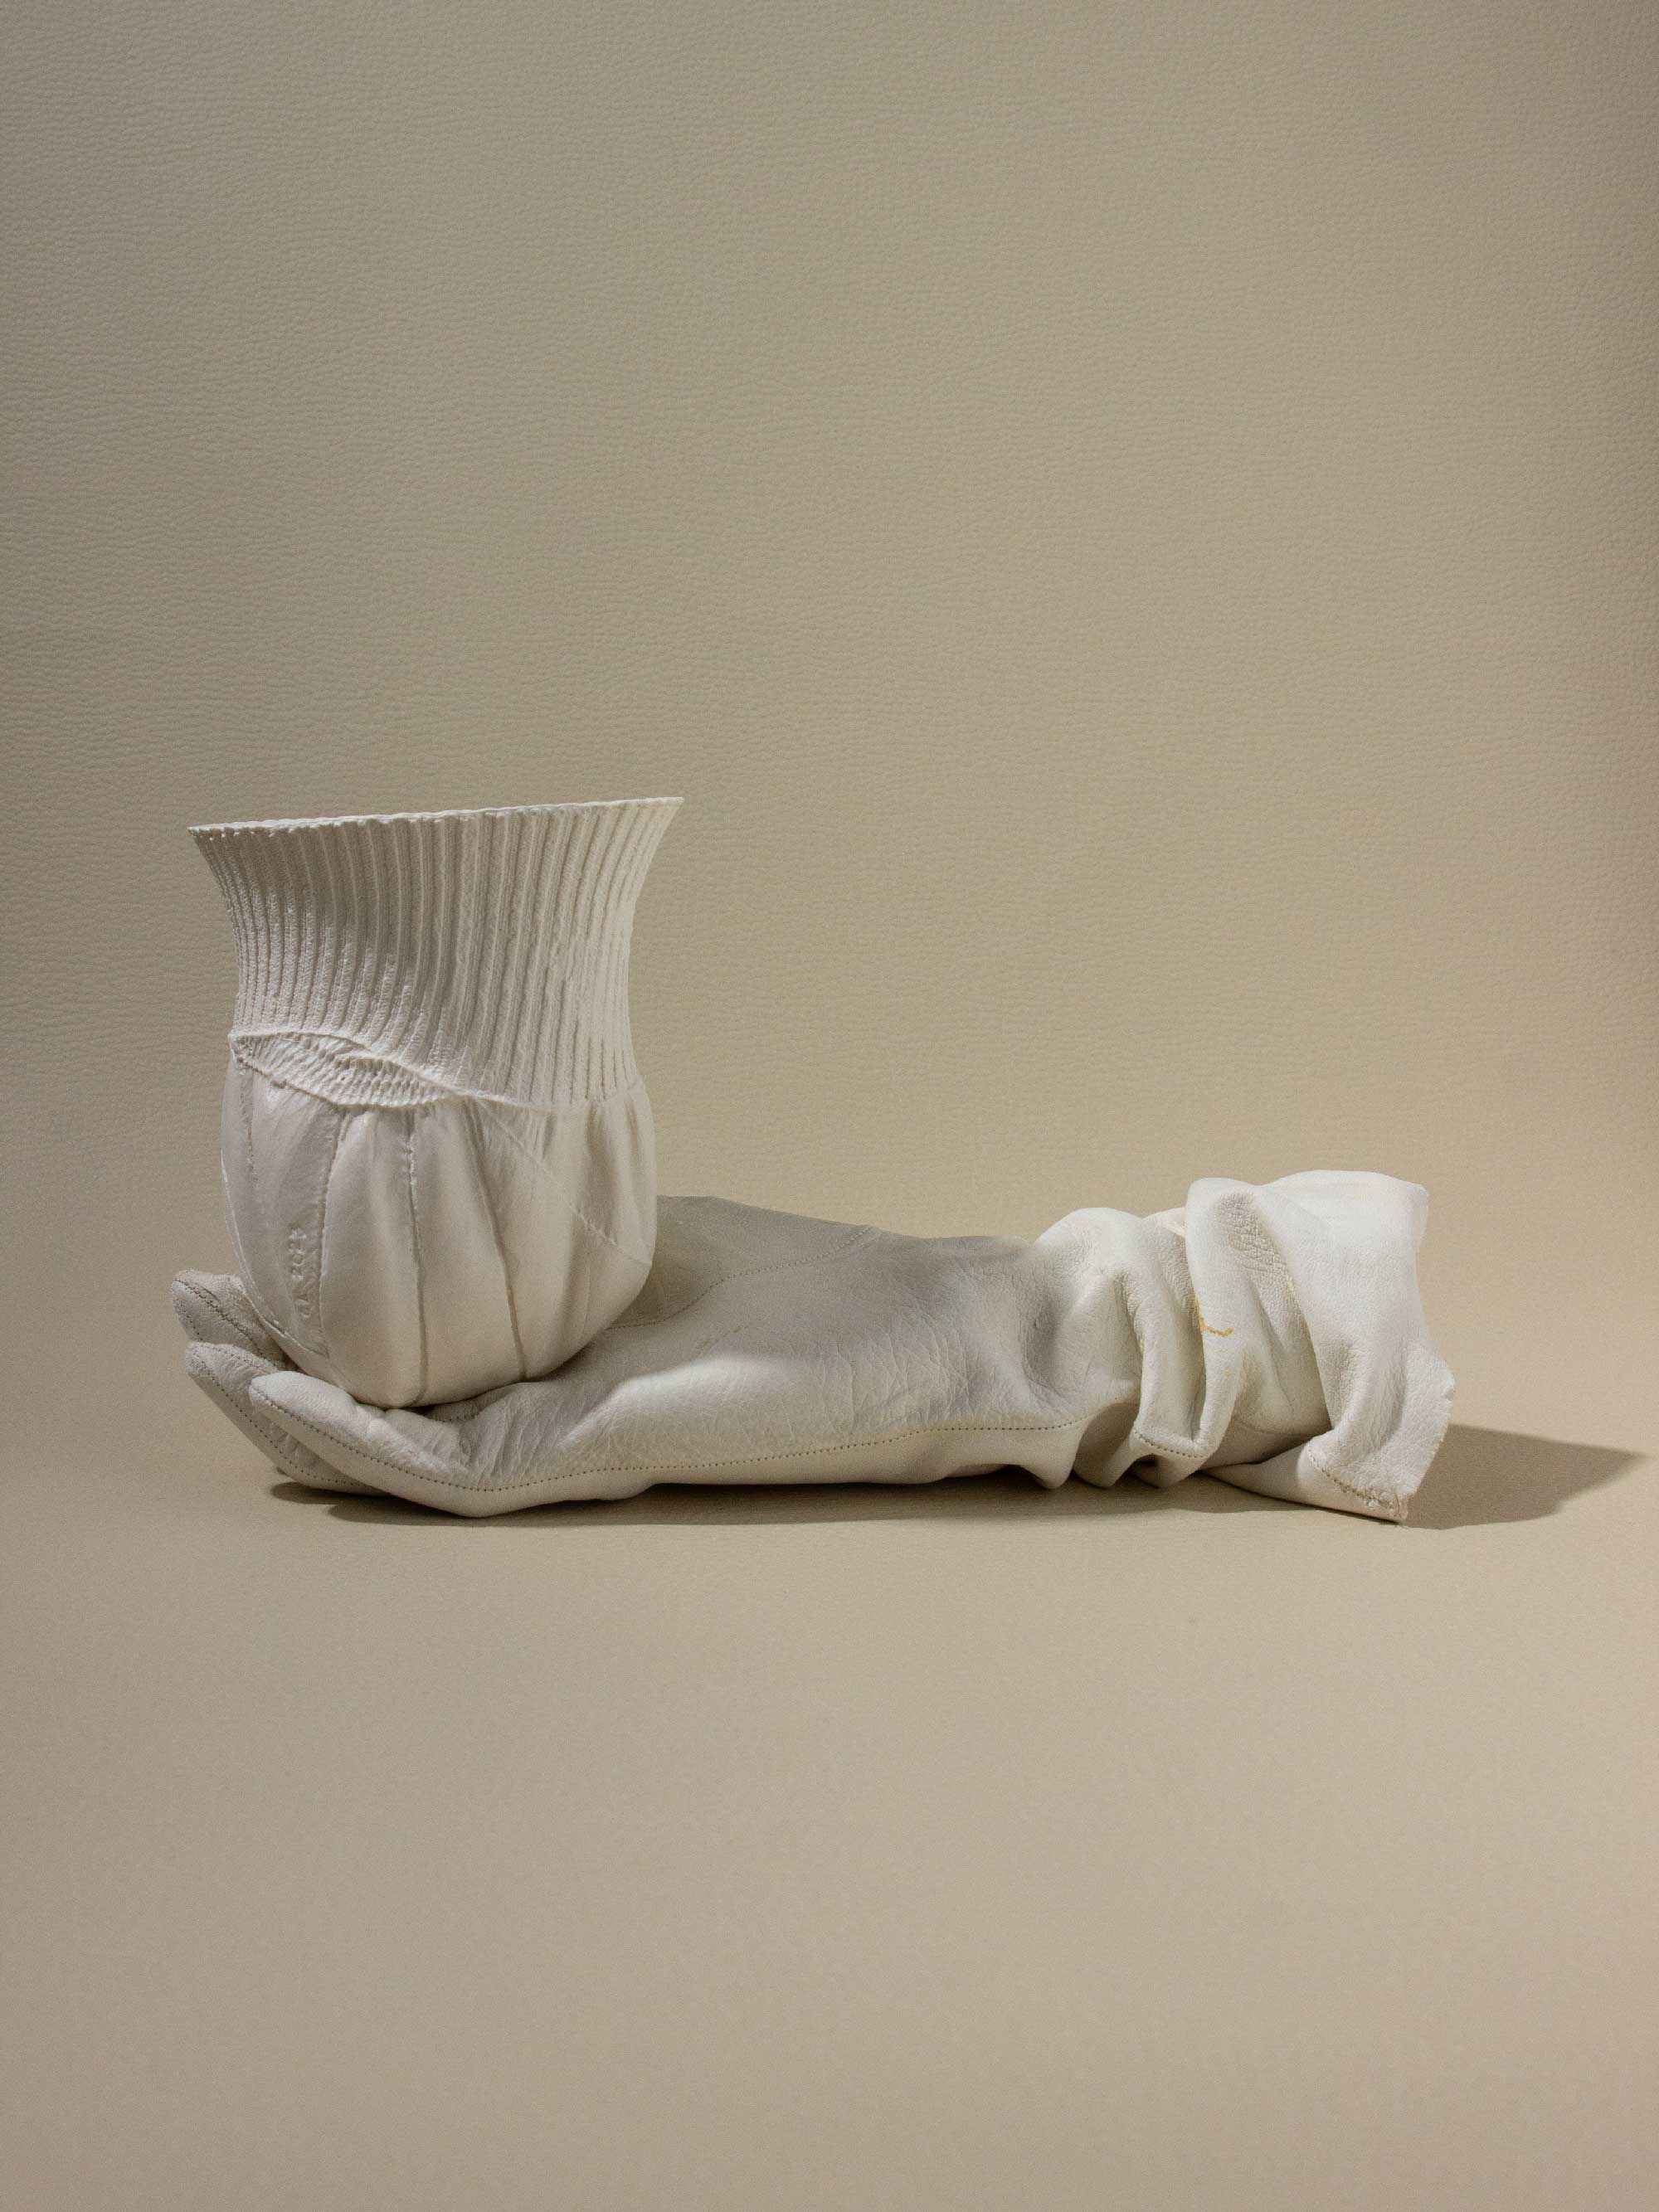 ALBESCENCES, drageoir. 2023. Porcelaine coulée dans des gants en cuir, terre sigillée. Photo : An Van De Moortel